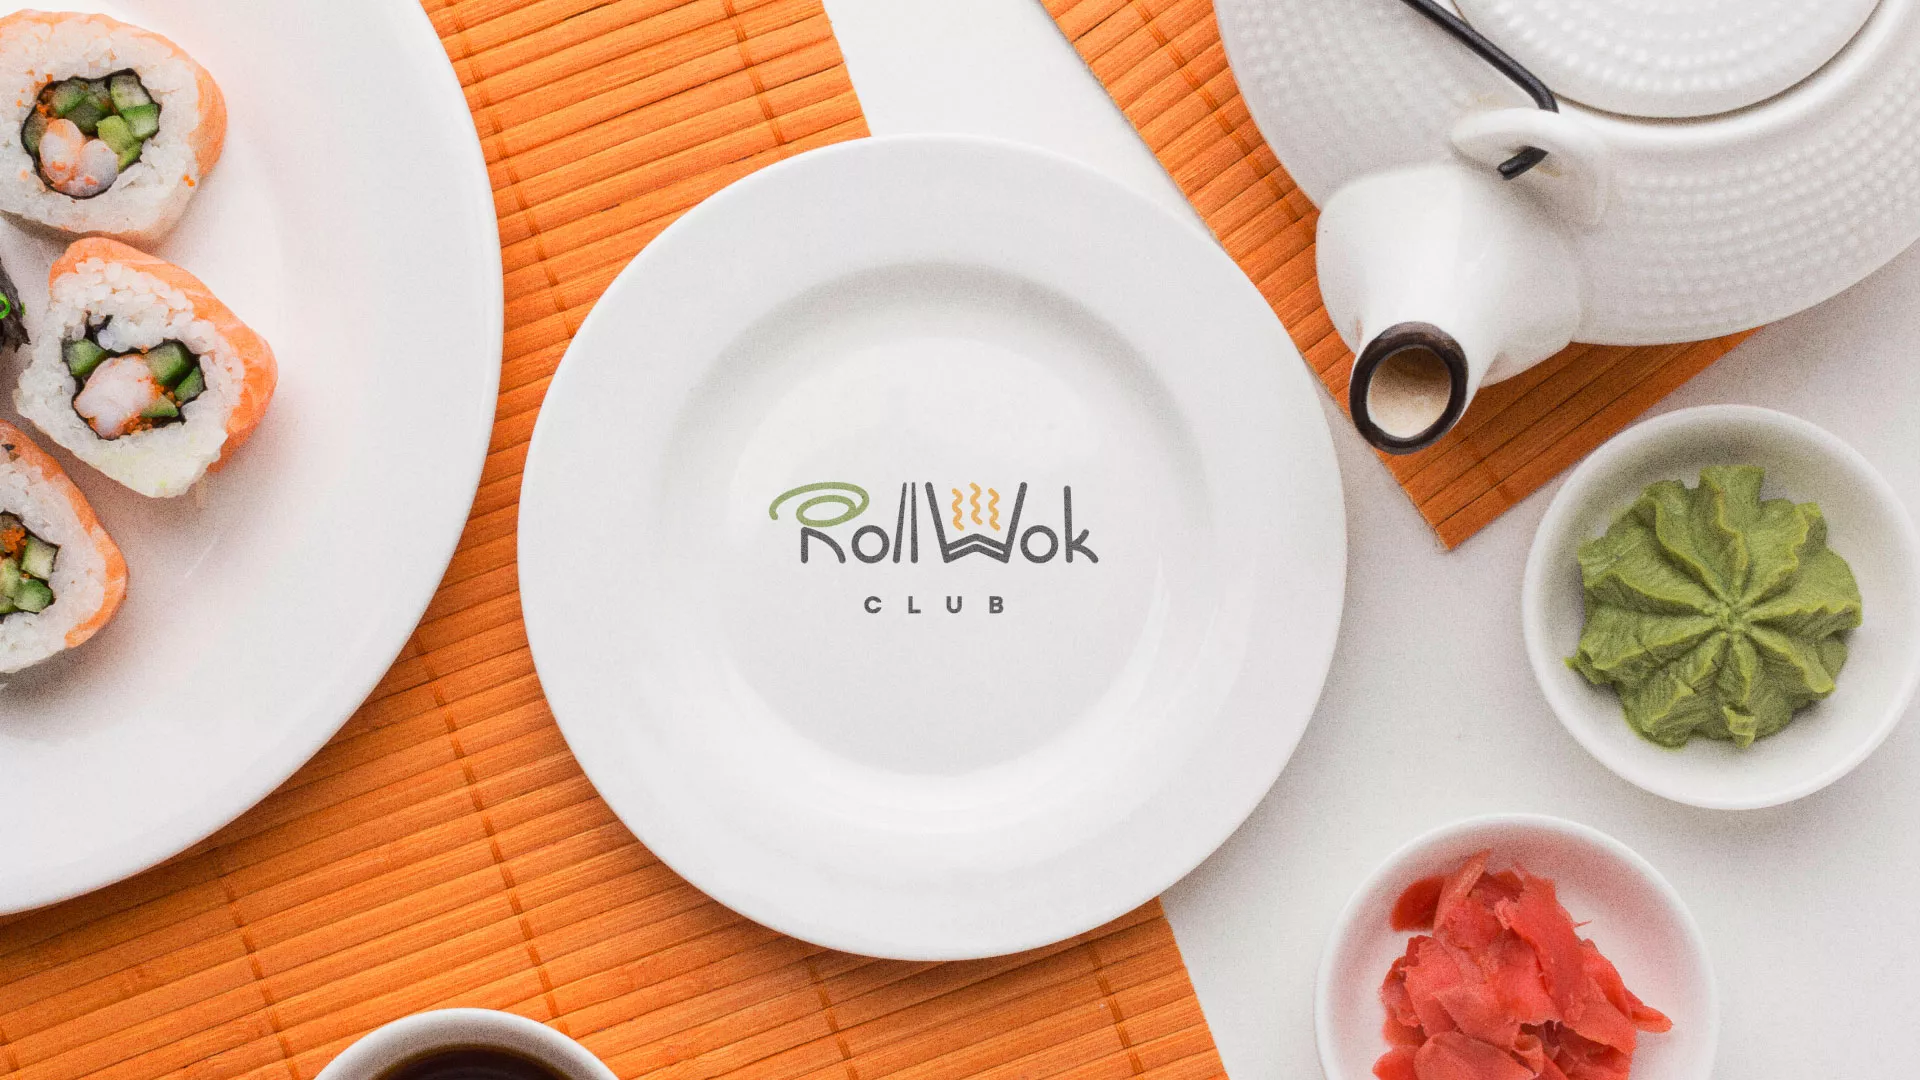 Разработка логотипа и фирменного стиля суши-бара «Roll Wok Club» в Аркадаке